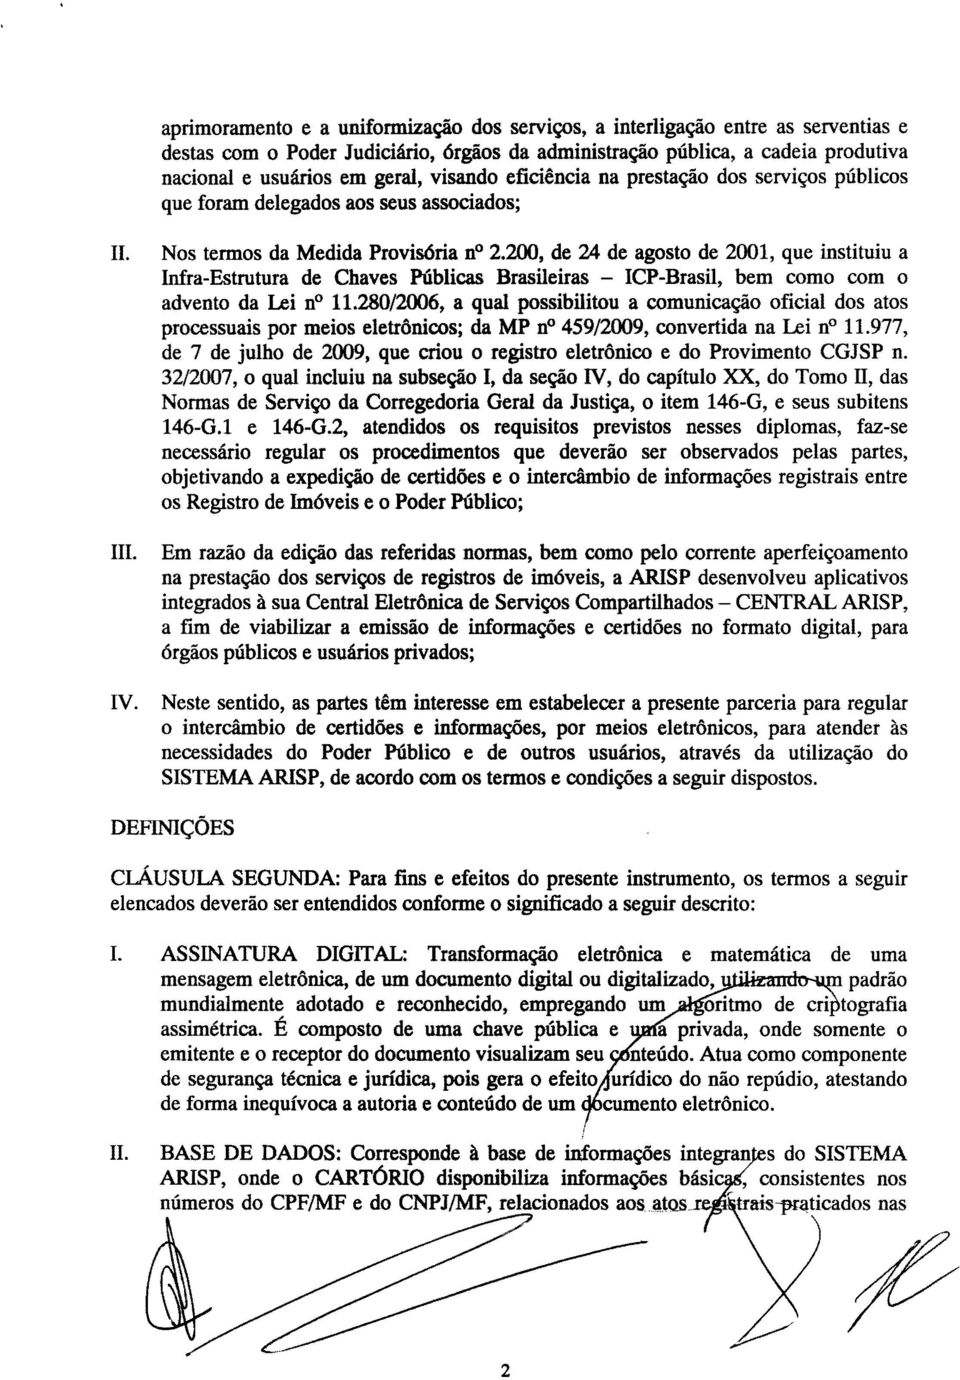 200, de 24 de agosto de 2001, que instituiu a Infra-Estrutura de Chaves Públicas Brasileiras - ICP-Brasil, bem como com o advento da Lei no 11.